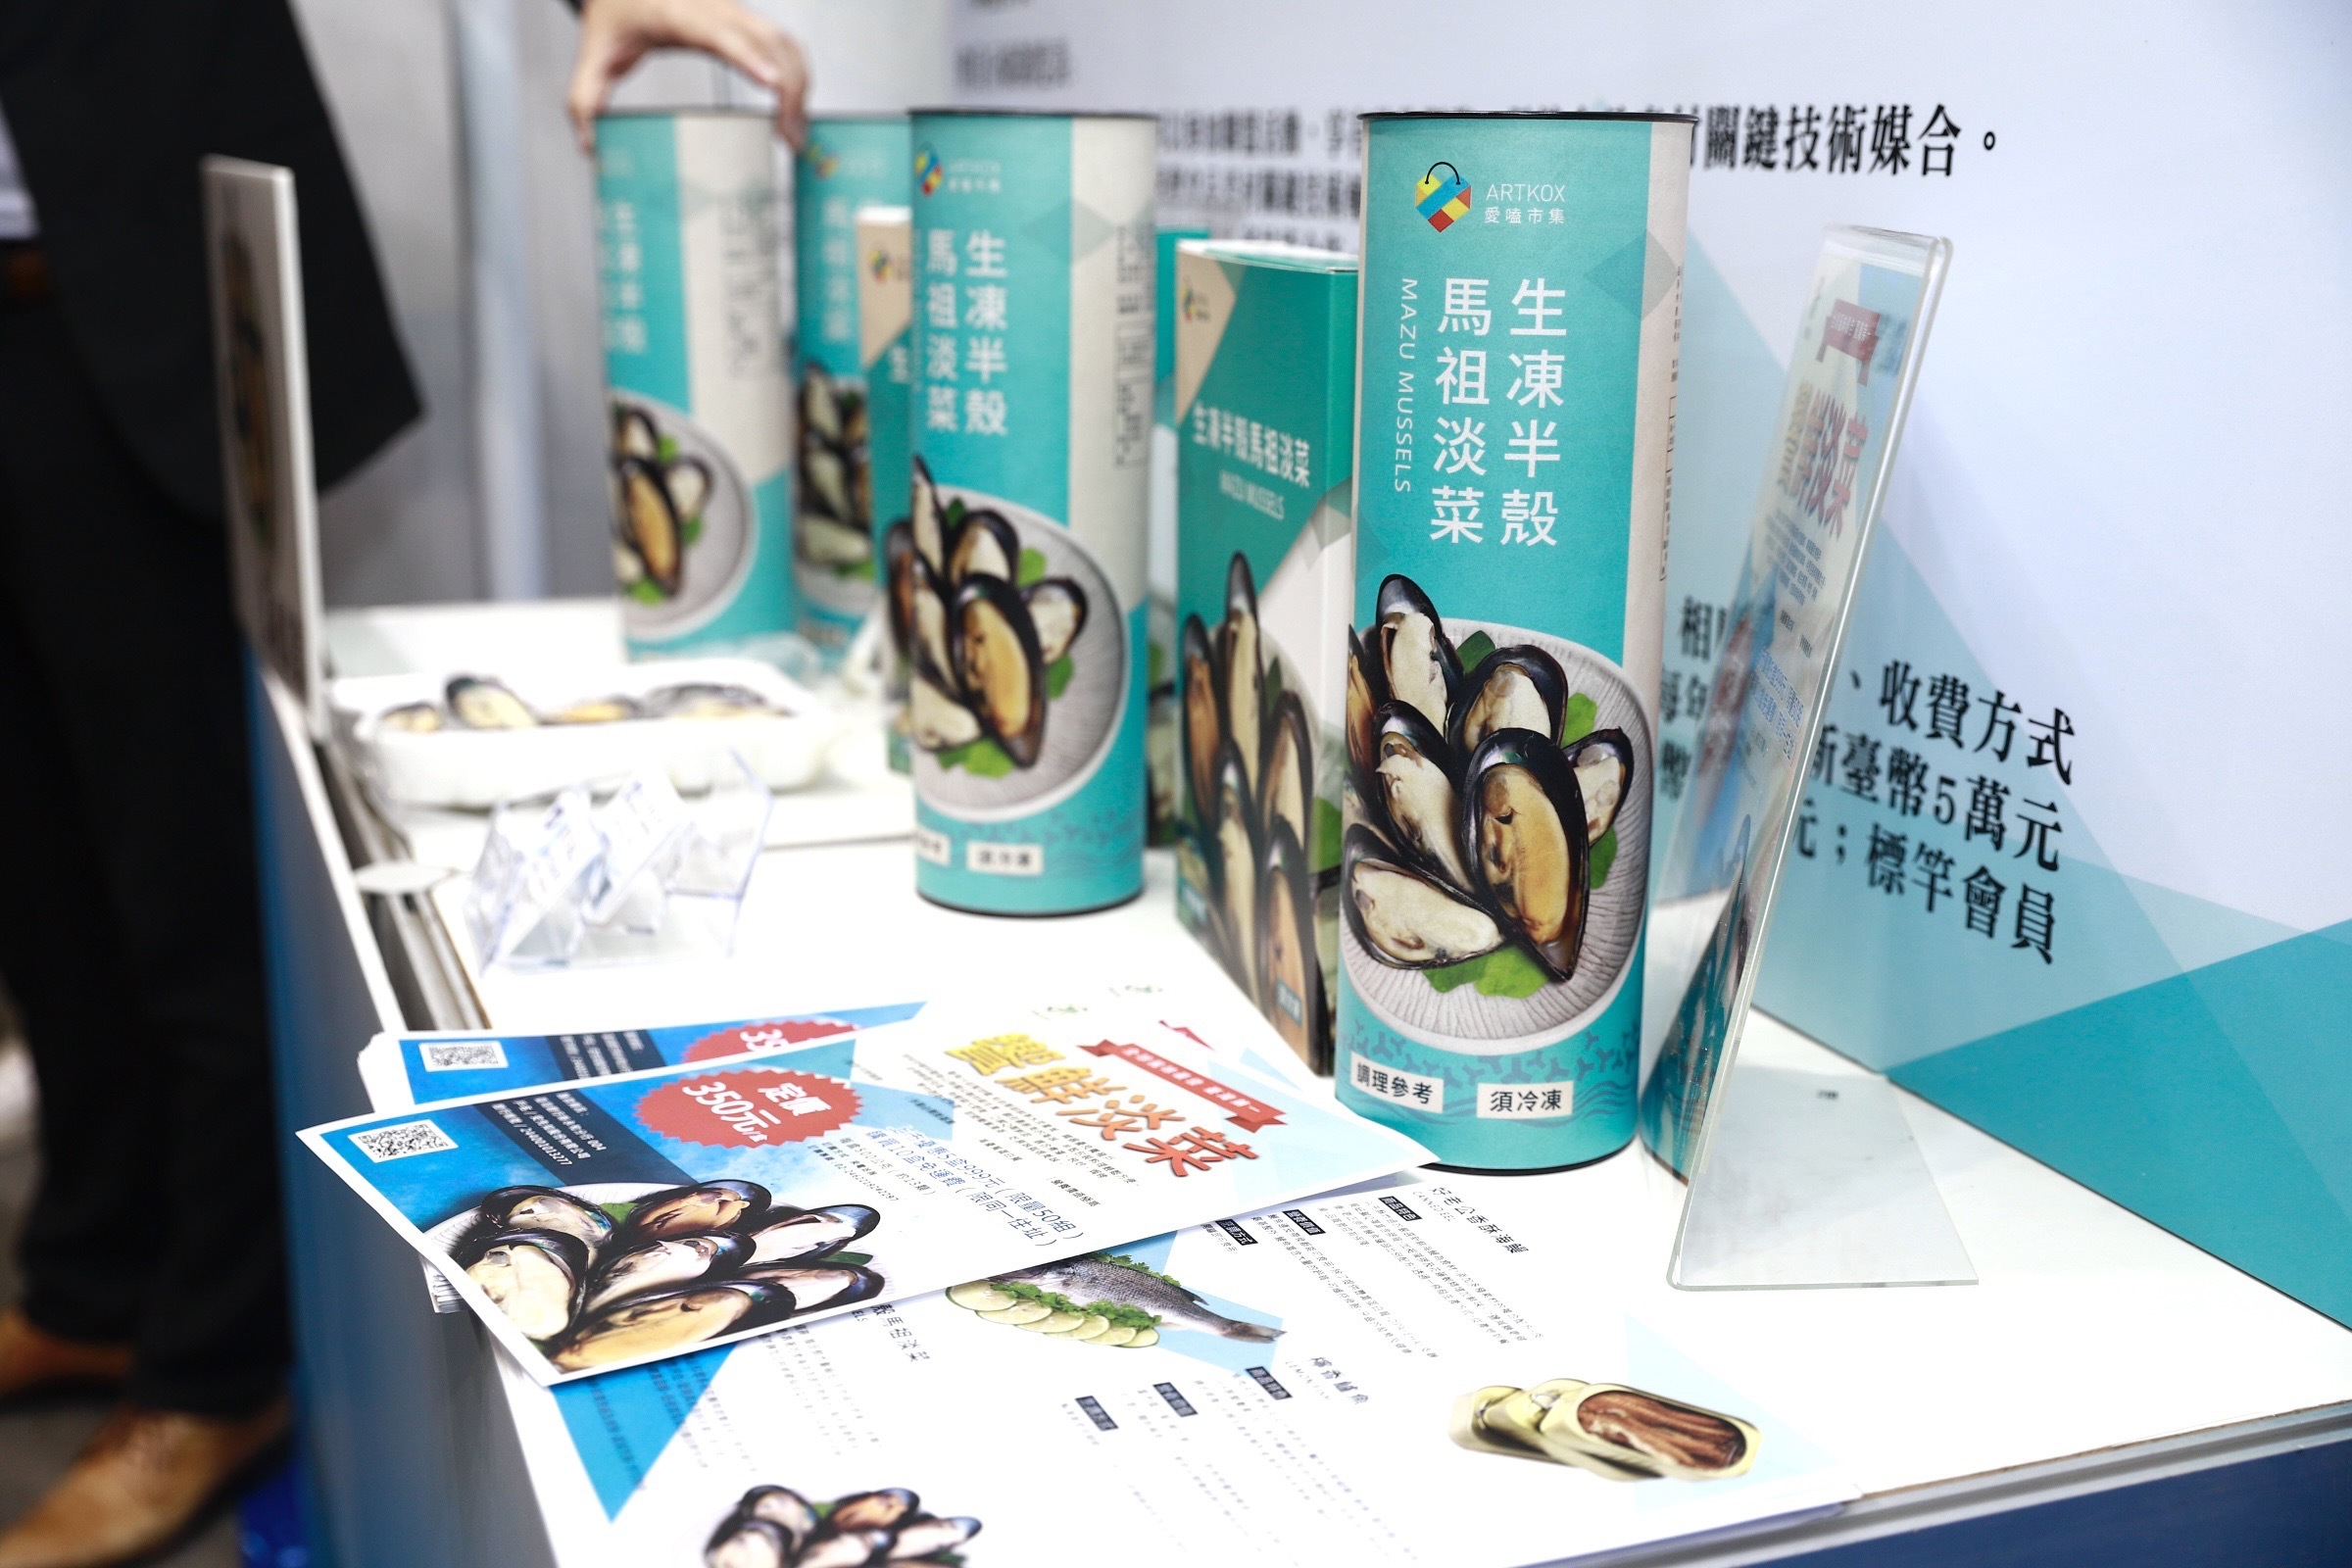 現場展示海大與連江縣政府合作的馬祖淡菜產品